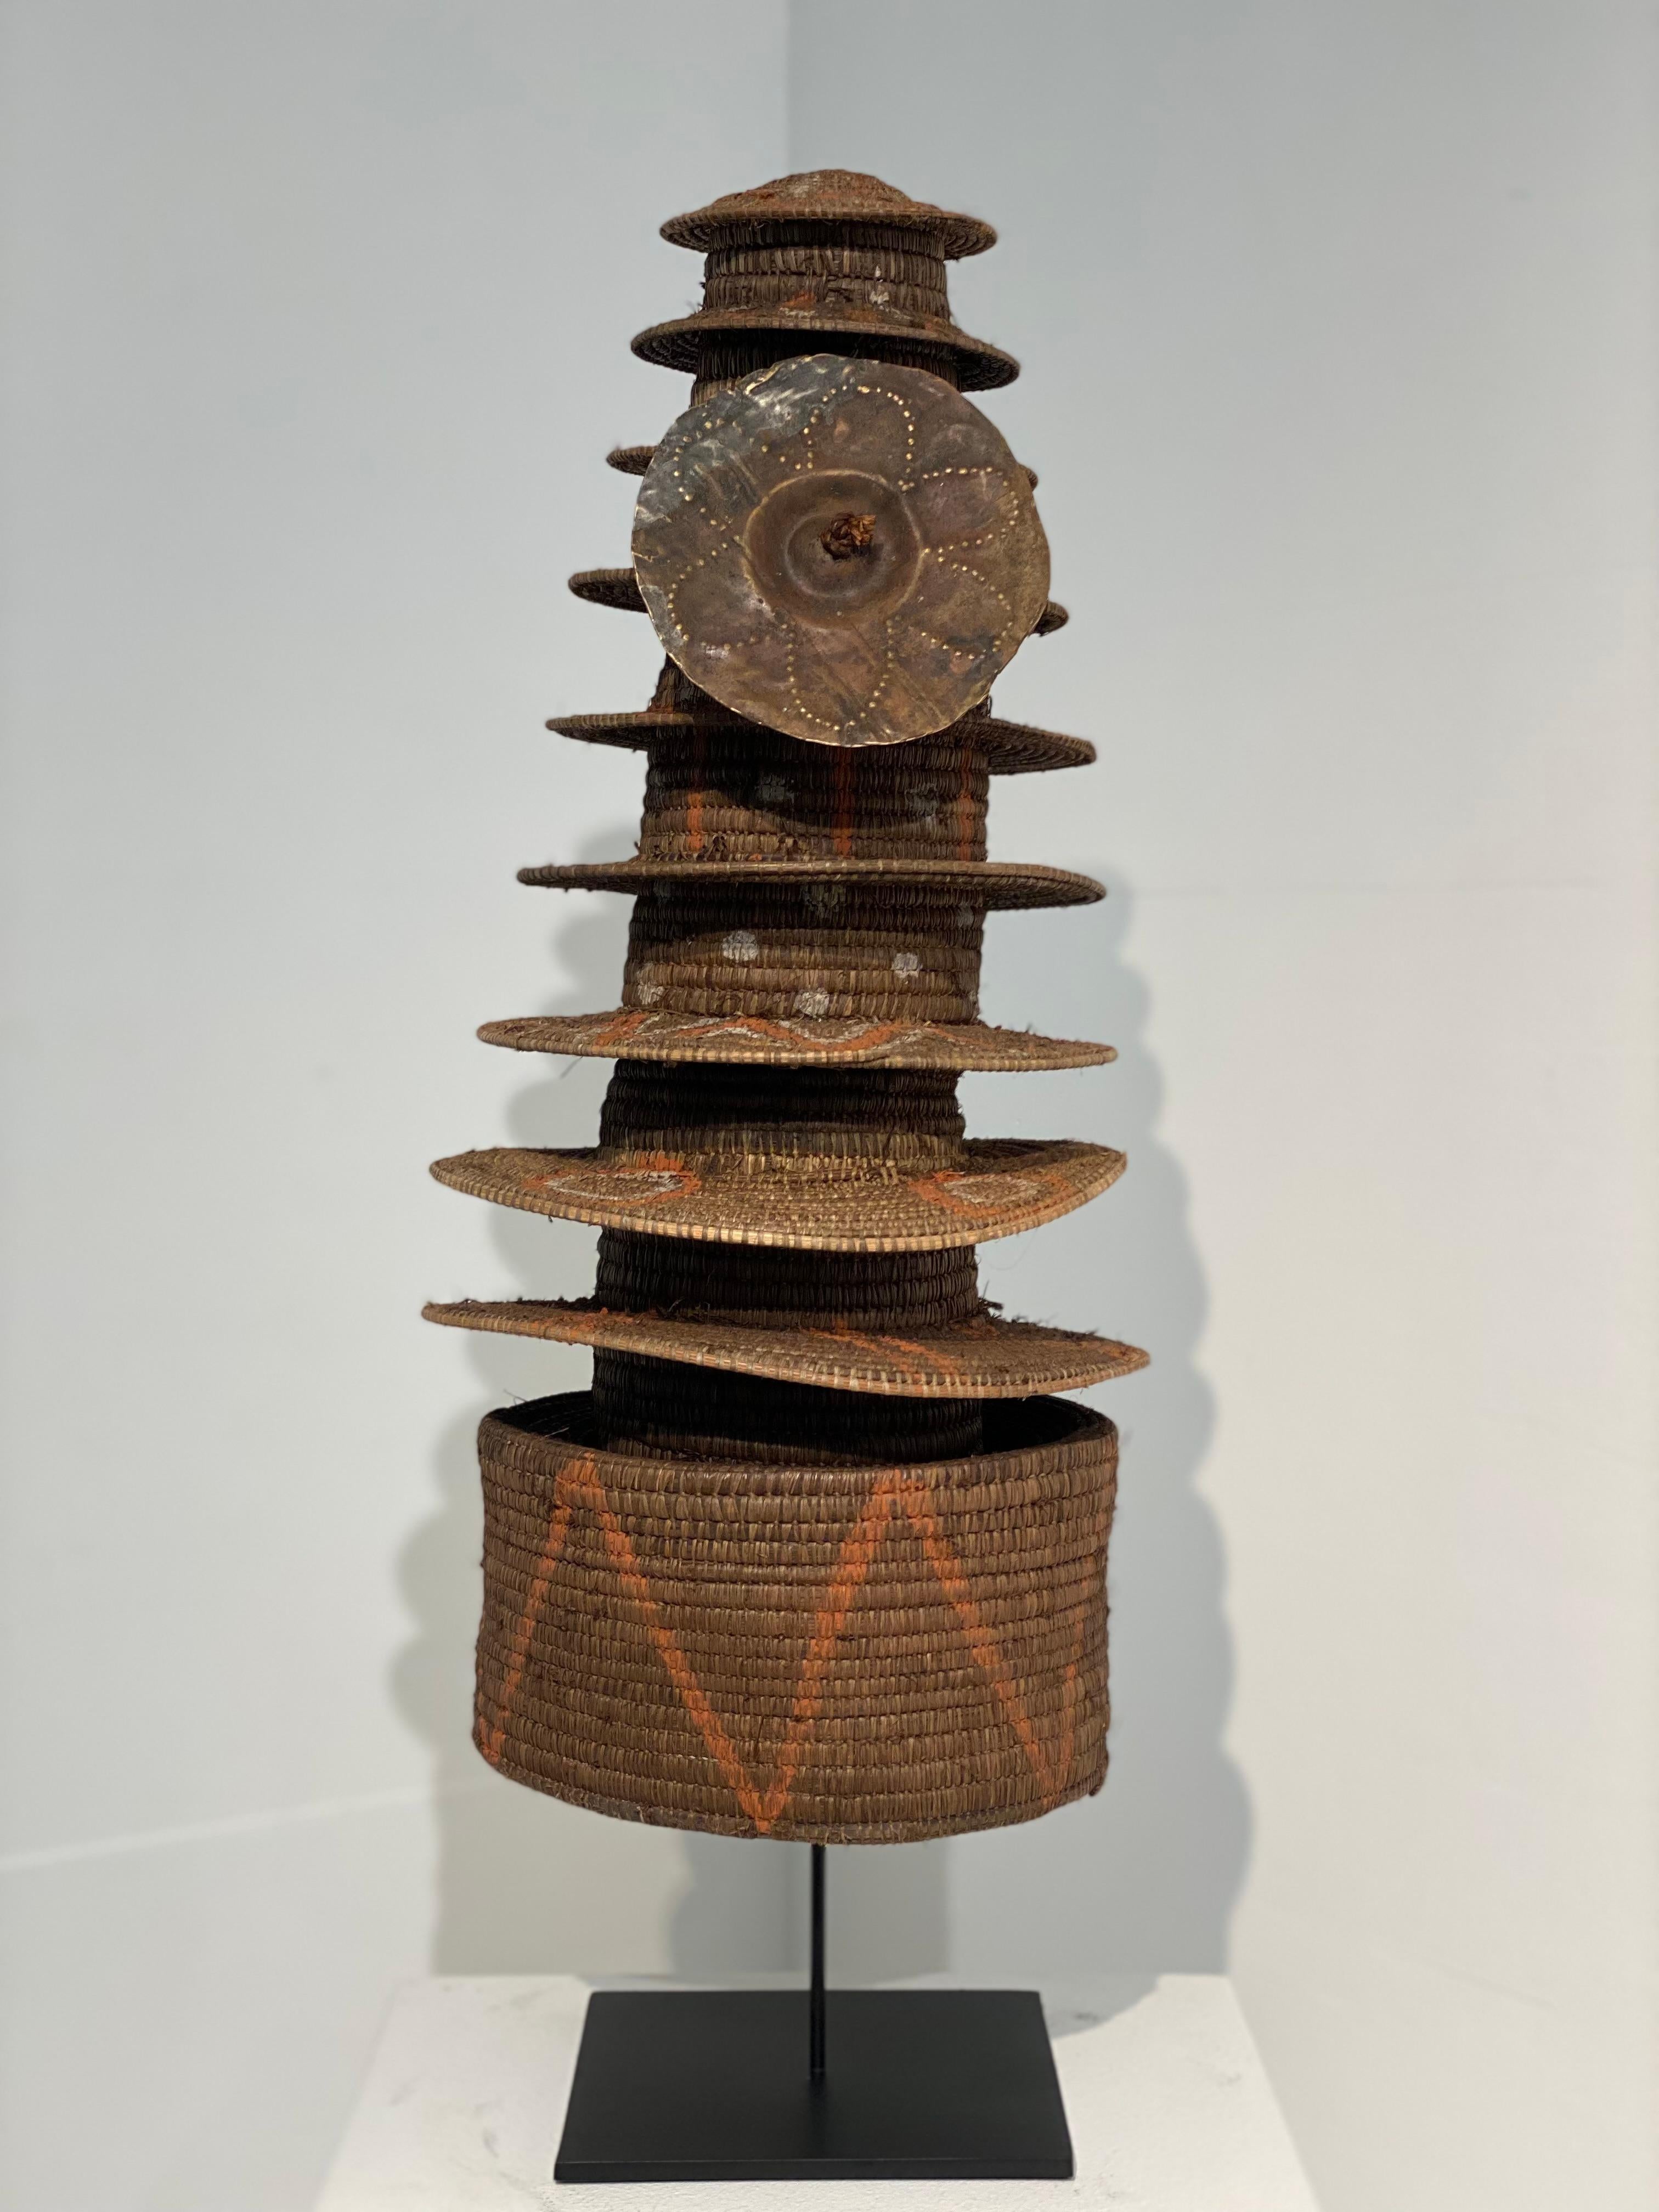 Außergewöhnliches Tribal Art Stück, ein afrikanischer Zeremonialhut, hergestellt aus
Handgewebter Raffia, der Raffia hat eine schöne warme und natürliche braune Farbe und hat handgemalte afrikanische Dekorationen und Designs,
der Ursprung ist  vom